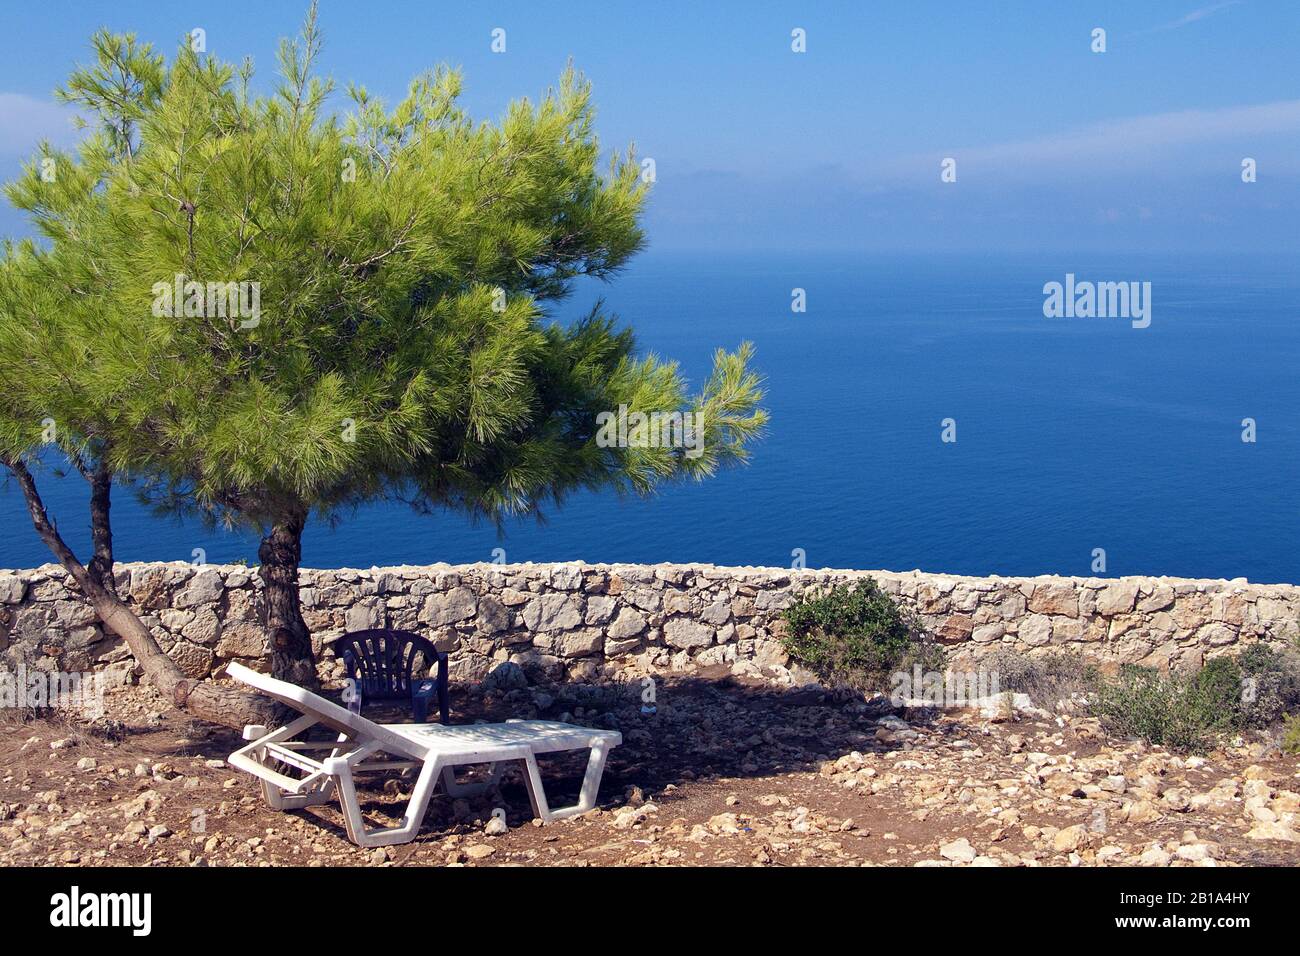 Coucher de soleil sous un arbre, espace ombragé avec vue sur la mer, Limni Keriou, île de Zakynthos, Grèce Banque D'Images